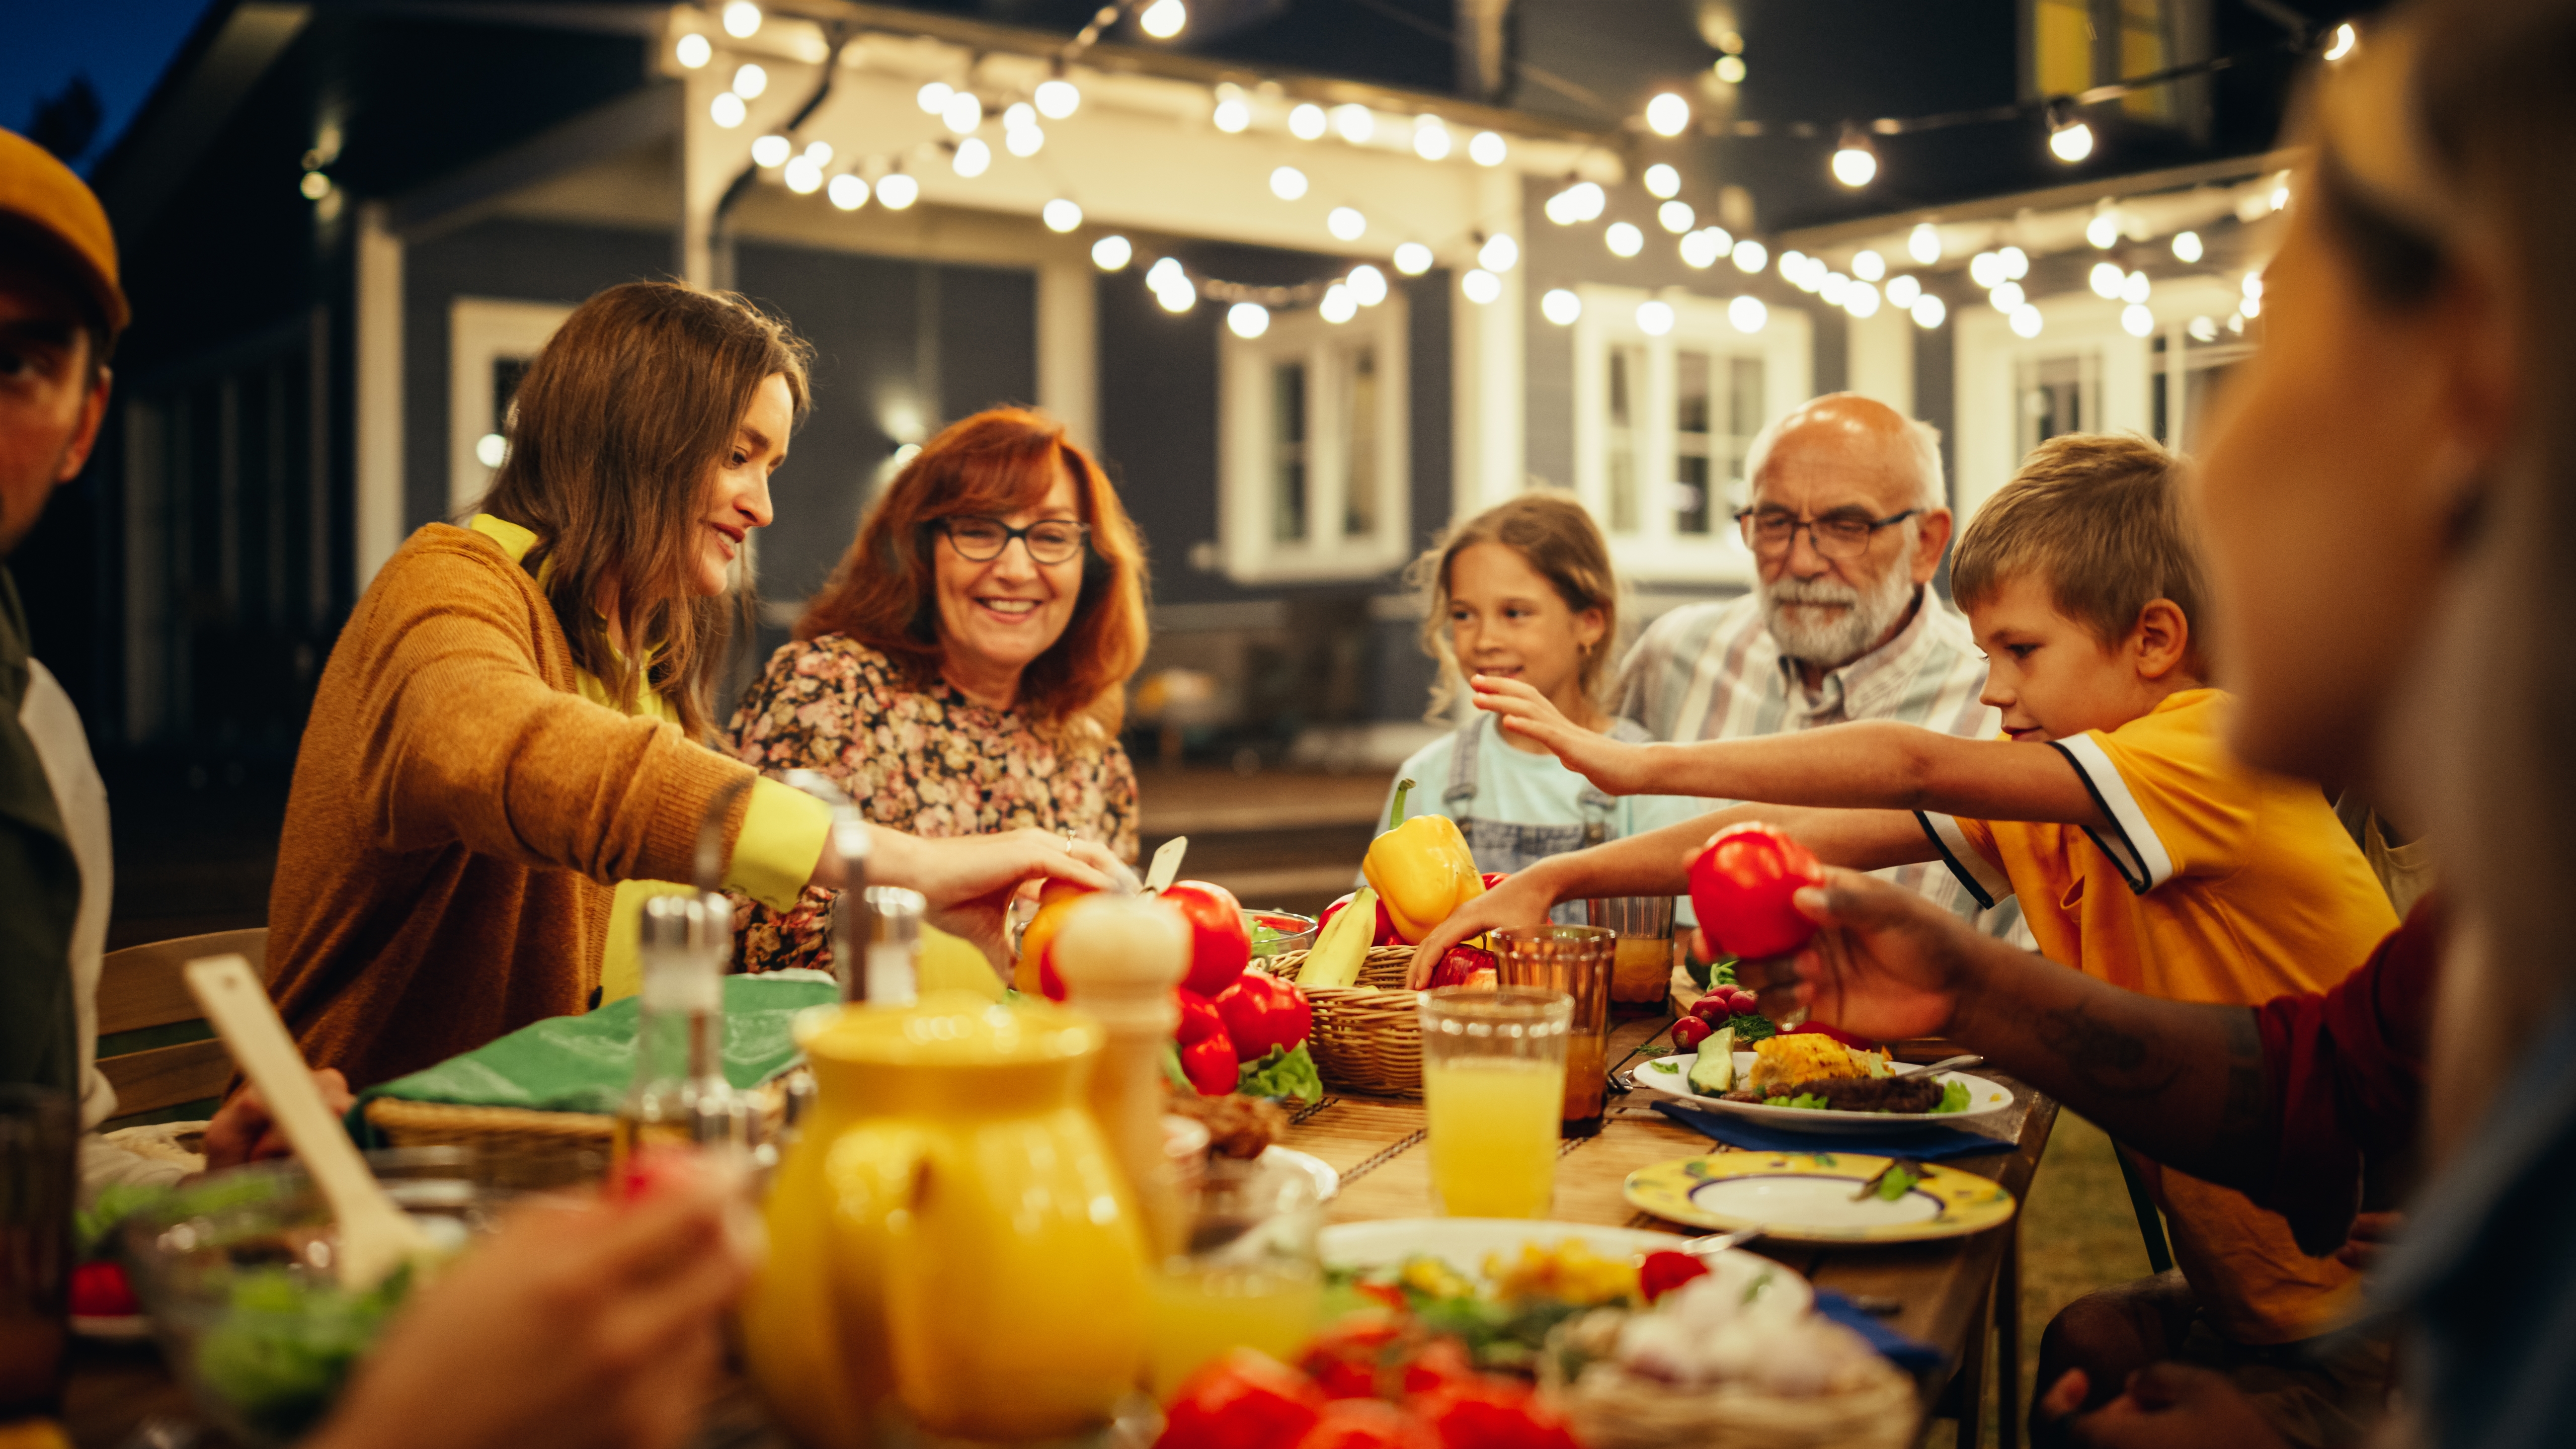 Pessoas sentadas juntas para jantar | Fonte: Shutterstock